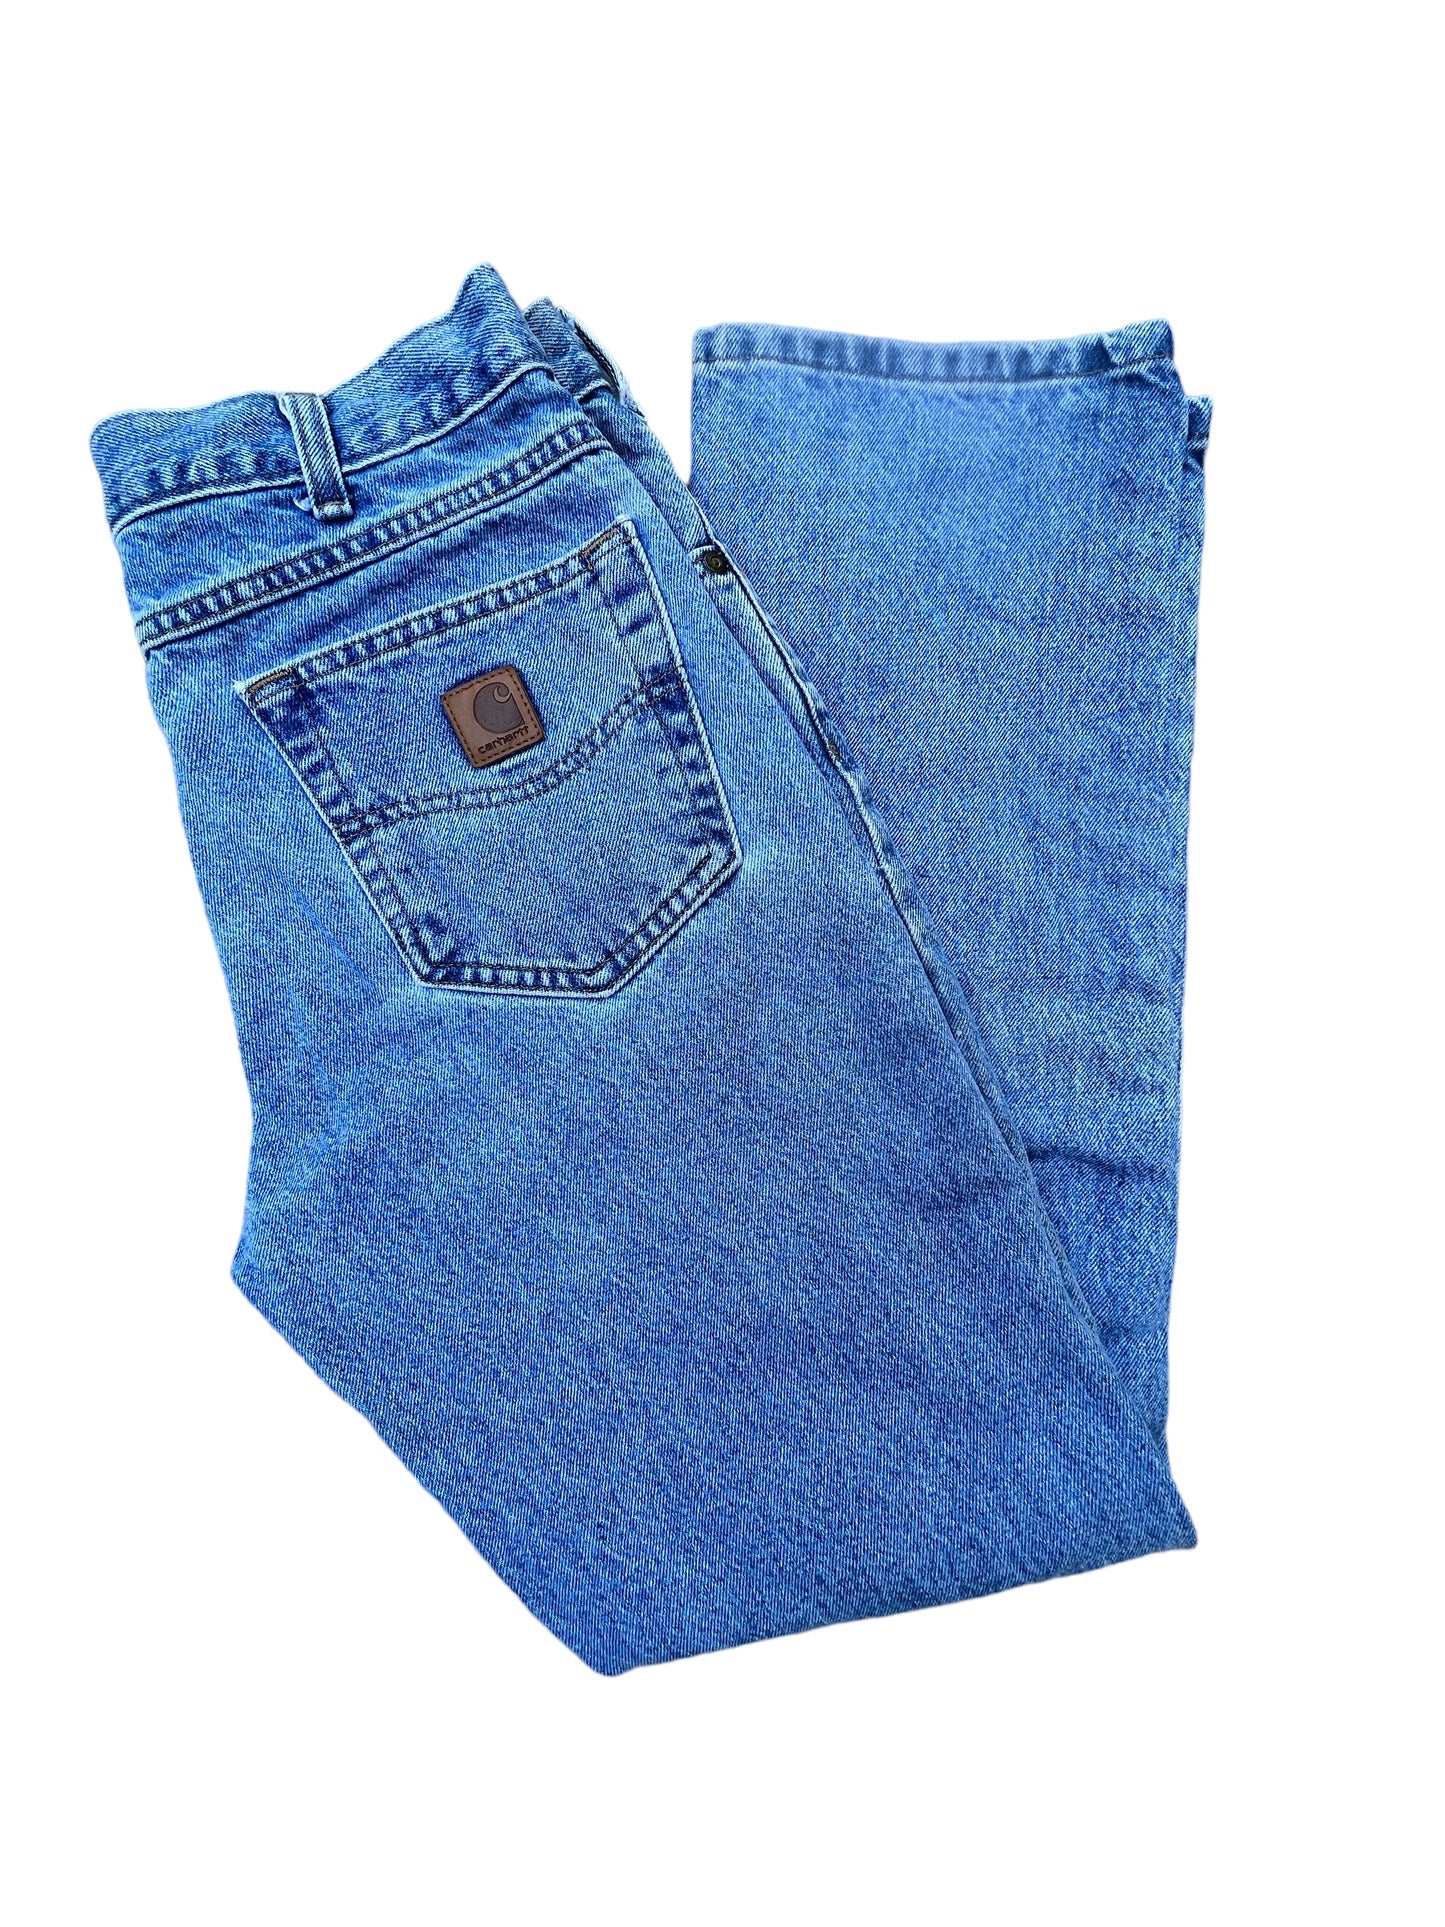 Vintage Carhartt Pants 32x32